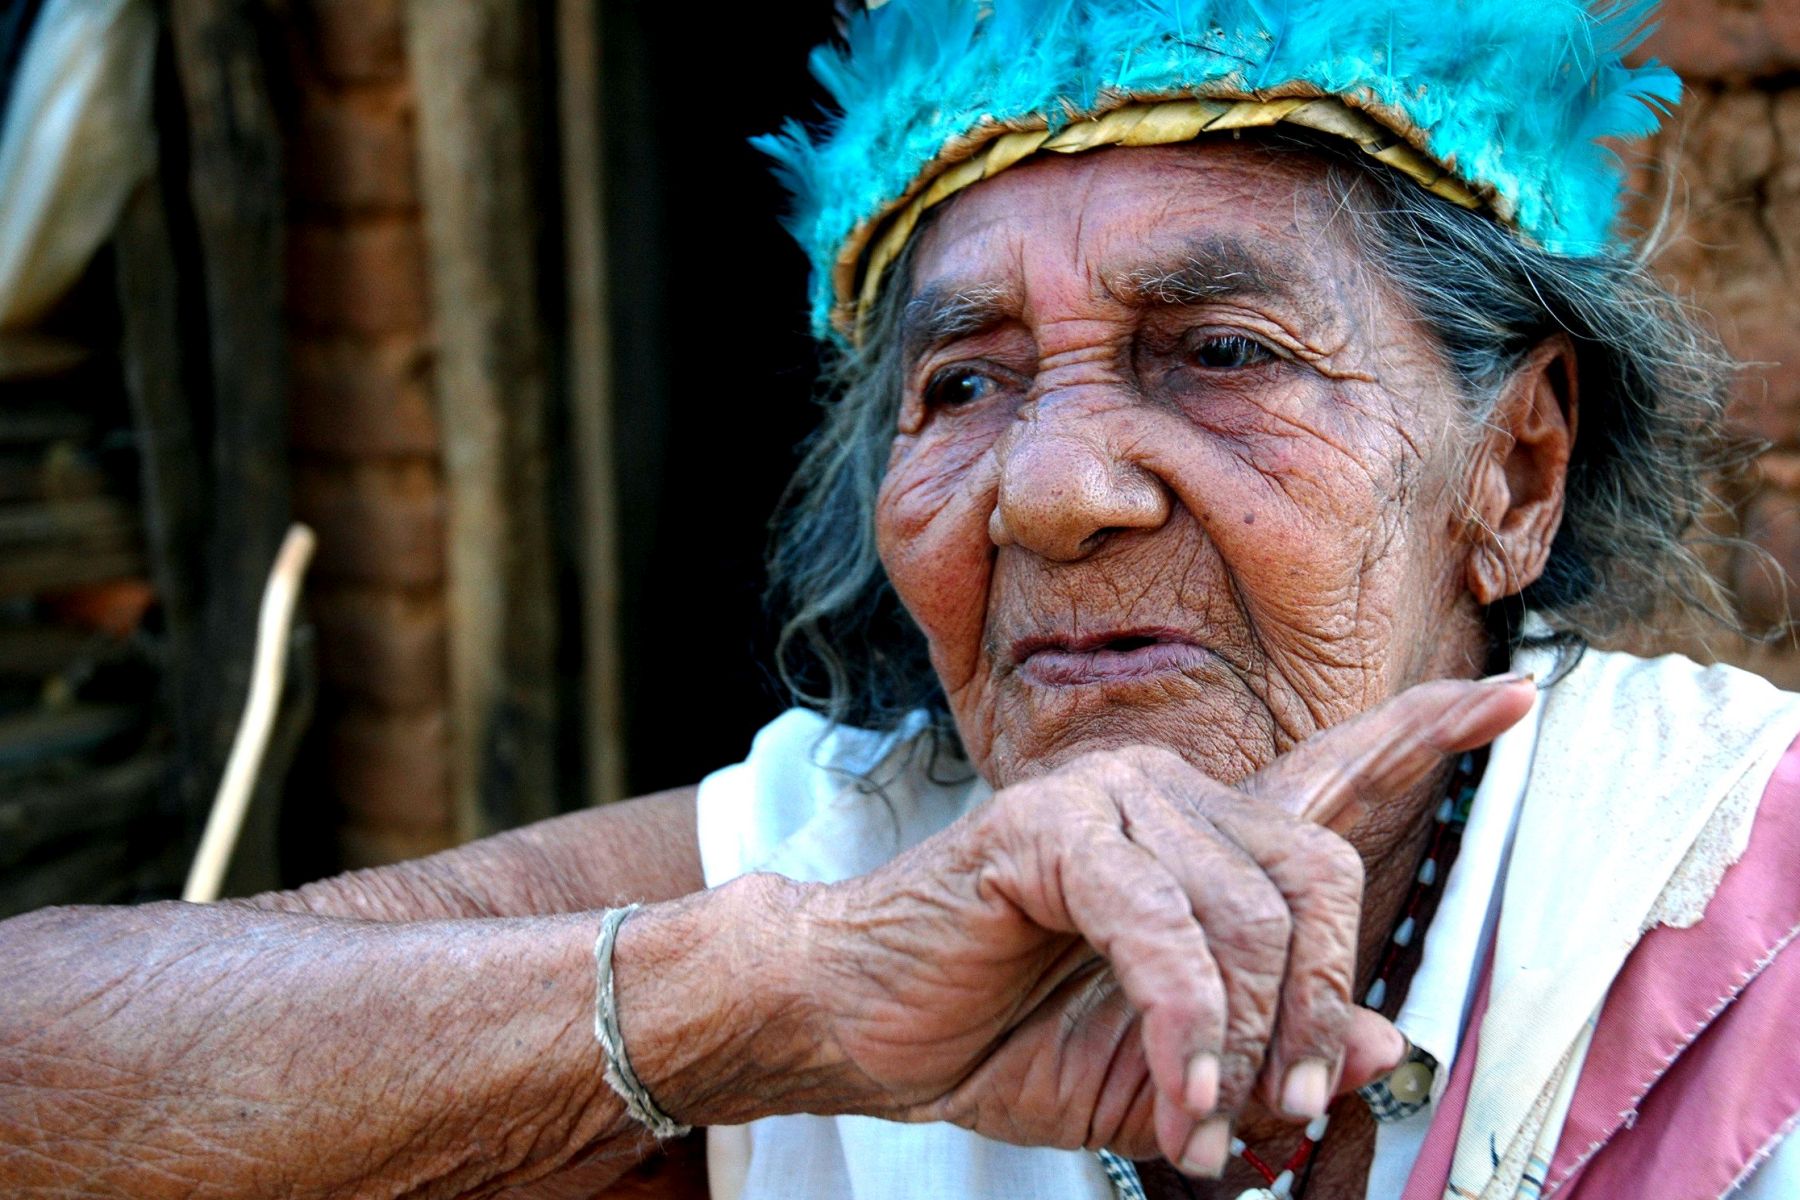 Profil einer indigenen Frau